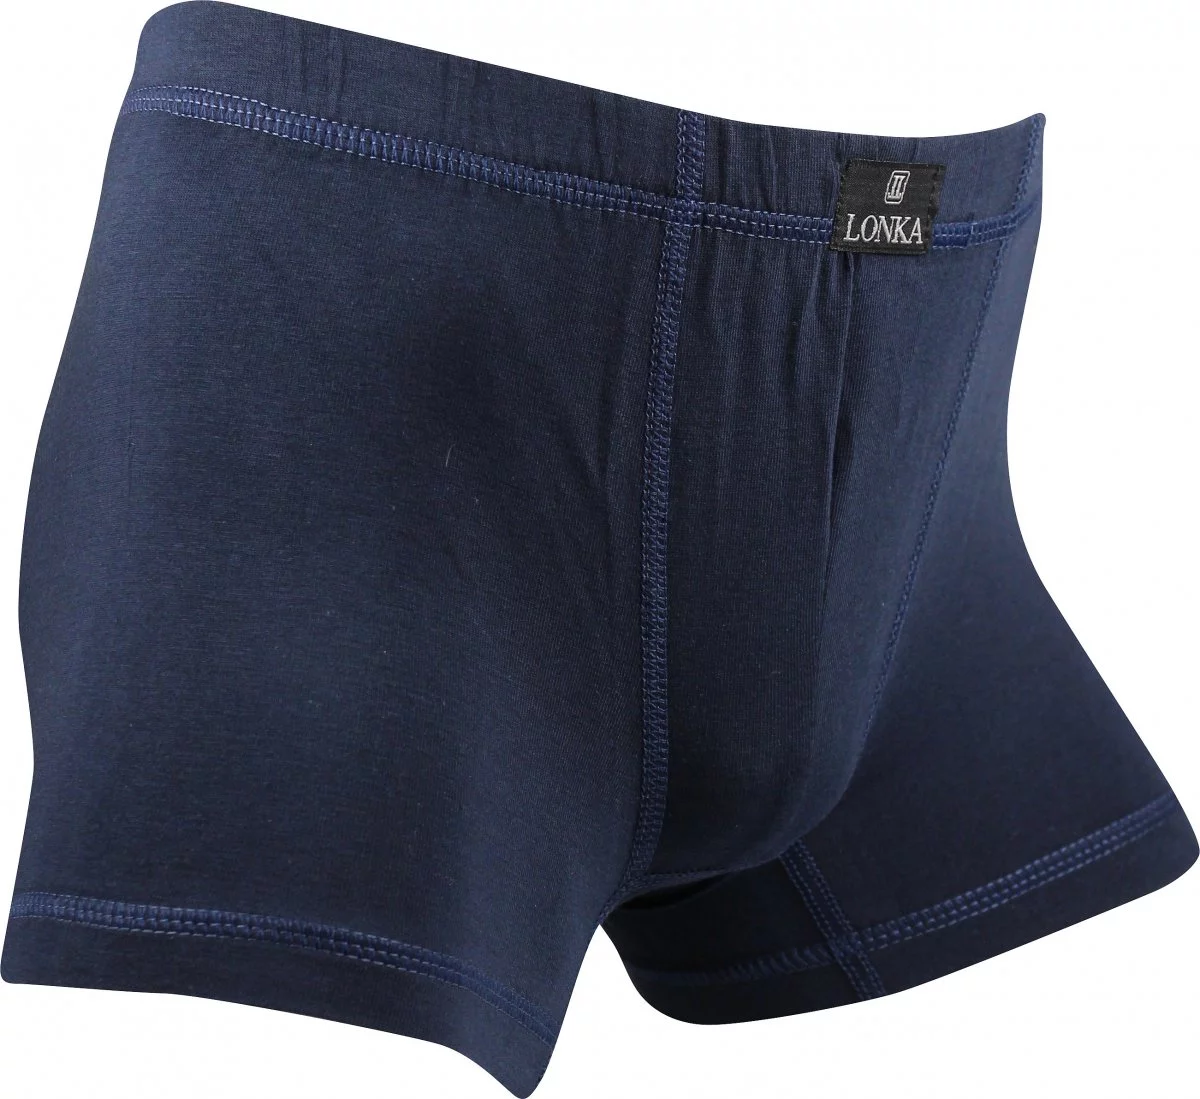 Chlapecké boxerky Cadlík - tmavě modré - Lonka - velikost 134-140